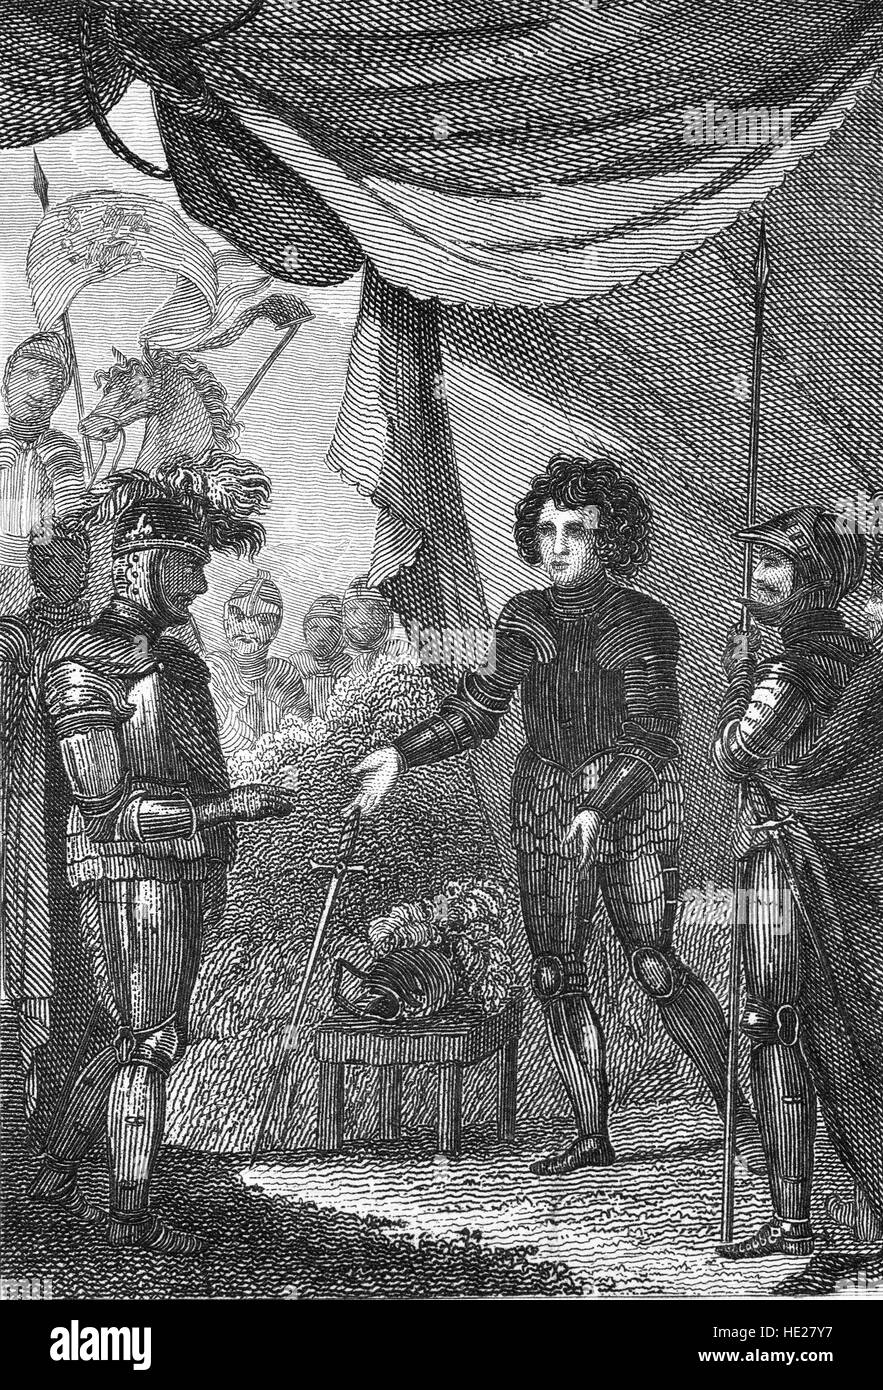 La Batalla de Poitiers fue una gran batalla de la guerra de los Cien Años entre Inglaterra y Francia. La batalla, ganada por los ingleses, tuvo lugar el 19 de septiembre de 1356 cerca de Poitiers, Francia, cuando Juan II, Rey de Francia, entregó a Eduardo, el Príncipe Negro. Foto de stock